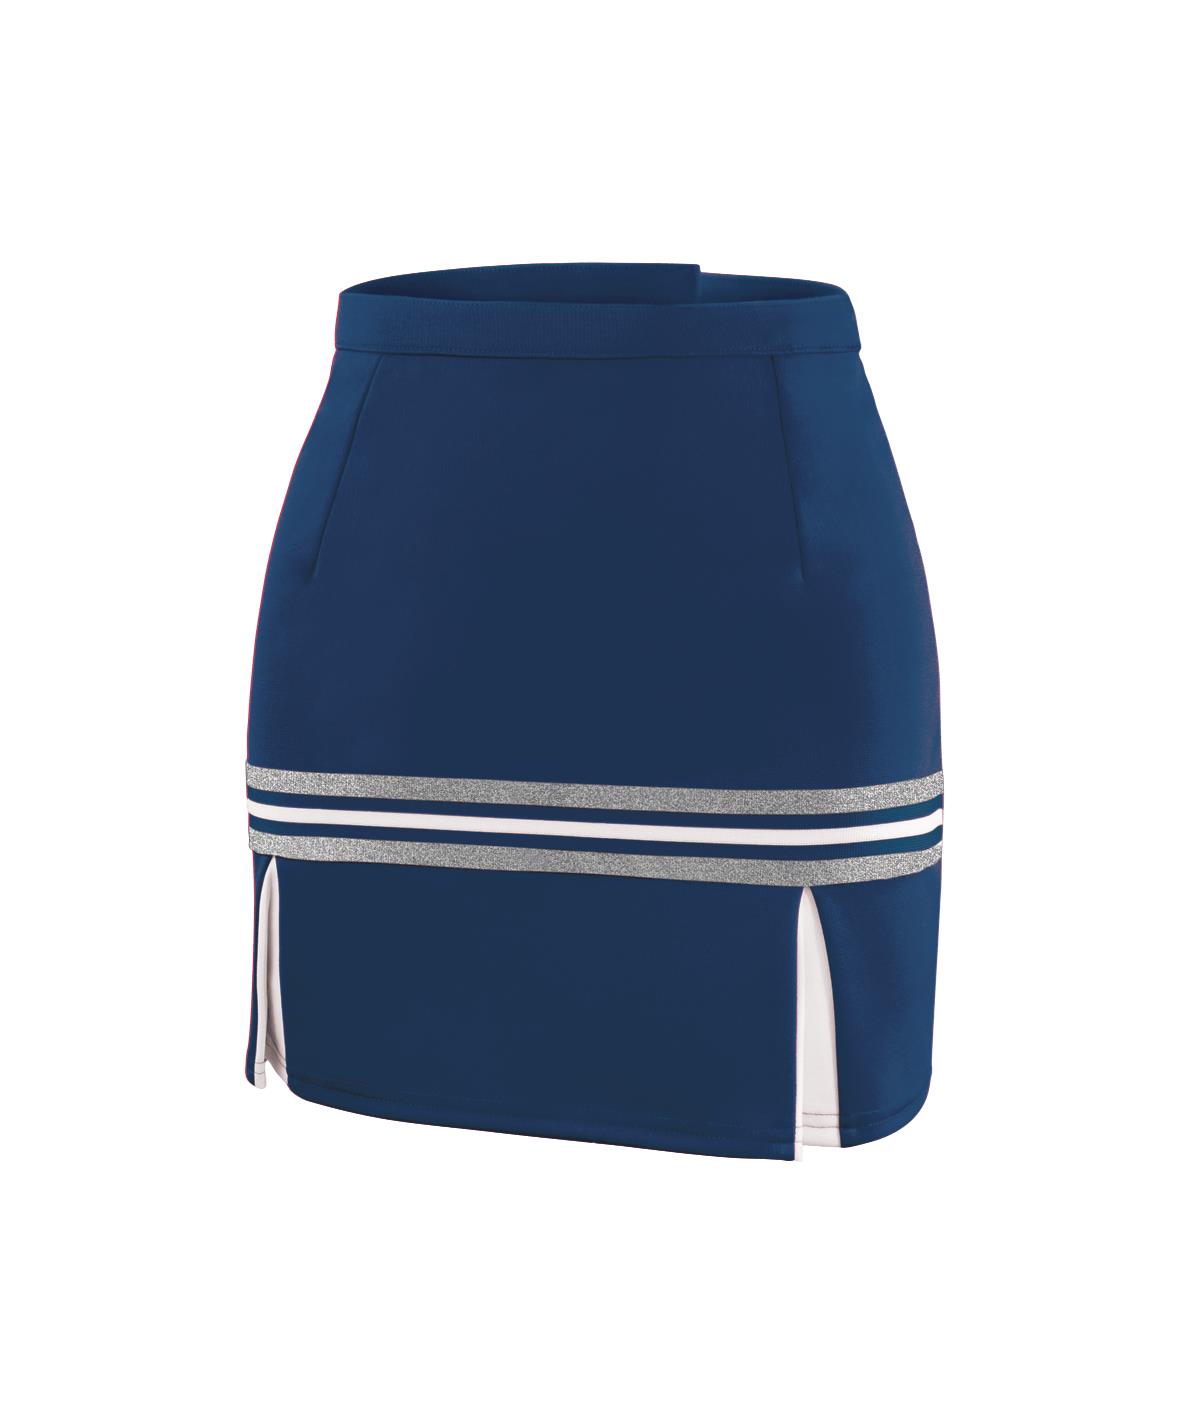 GK Sideline Premier Skirt